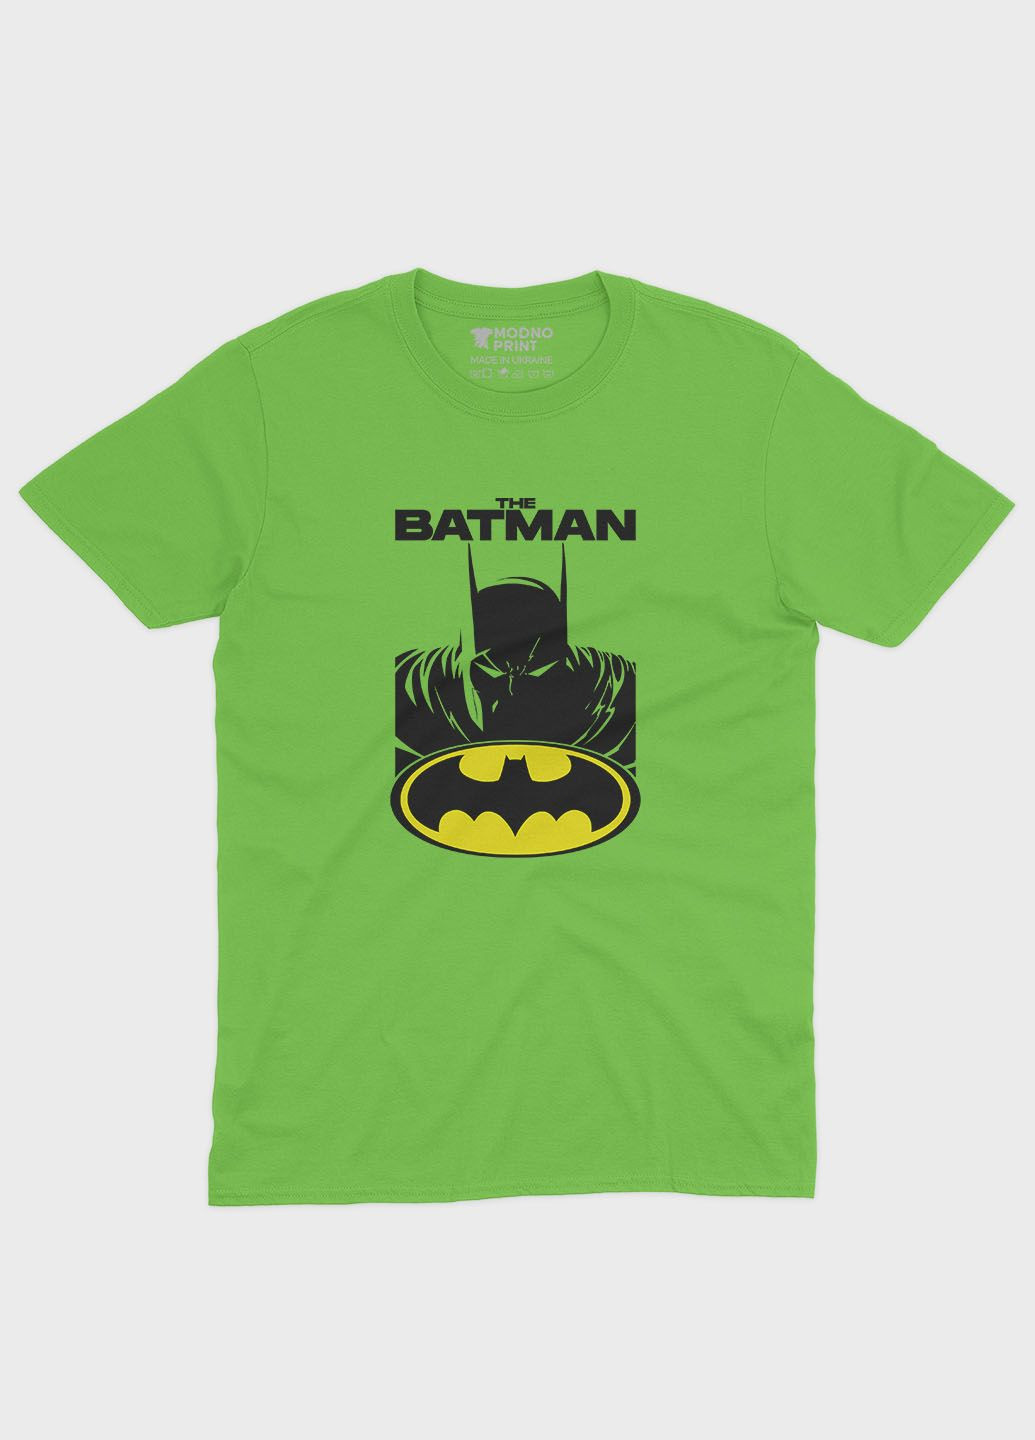 Салатовая демисезонная футболка для девочки с принтом супергероя - бэтмен (ts001-1-kiw-006-003-019-g) Modno